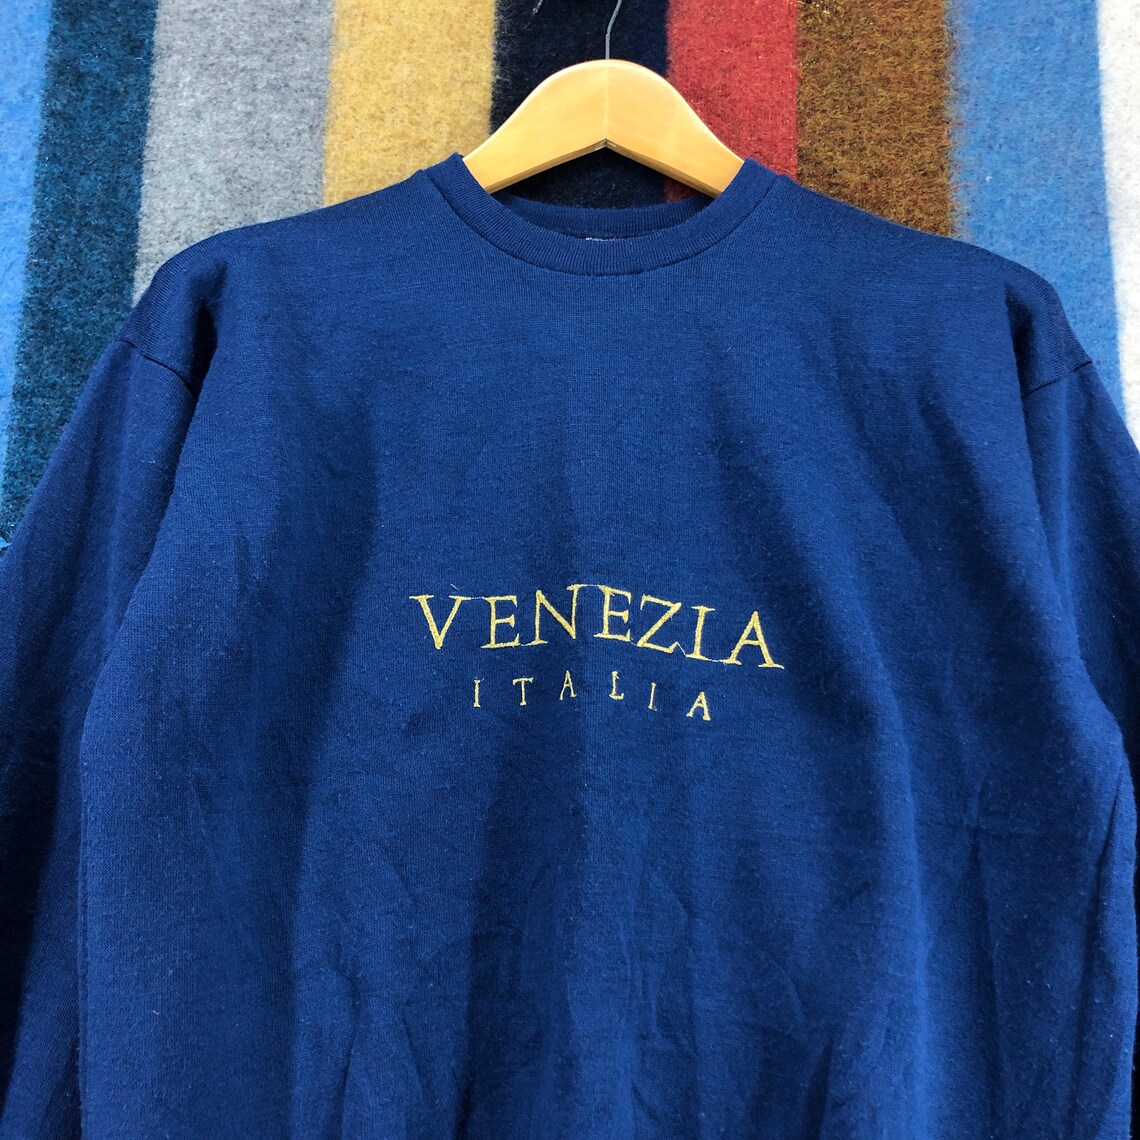 90s Vintage VENEZIA ITALIAN Made In Italy Navy Blue Sweatshirt | Etsy